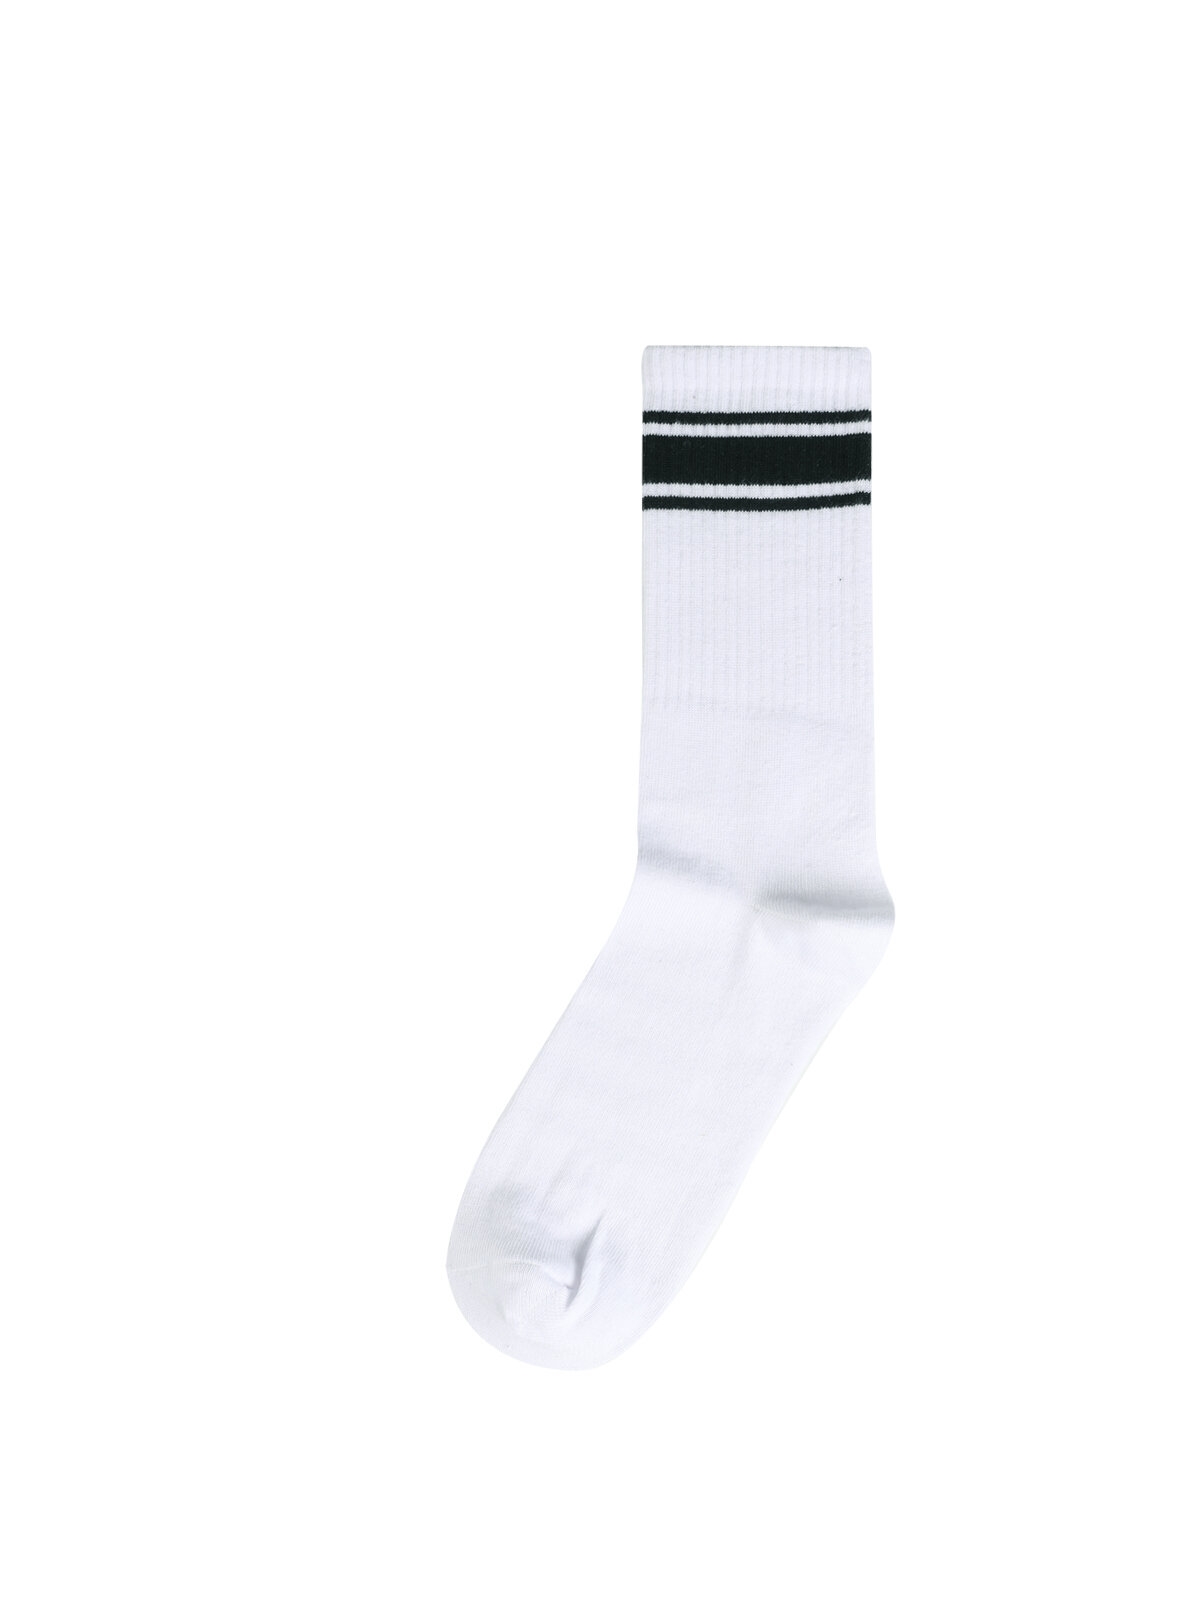 Показати інформацію про Шкарпетки Чоловічі Білі Cl1046720